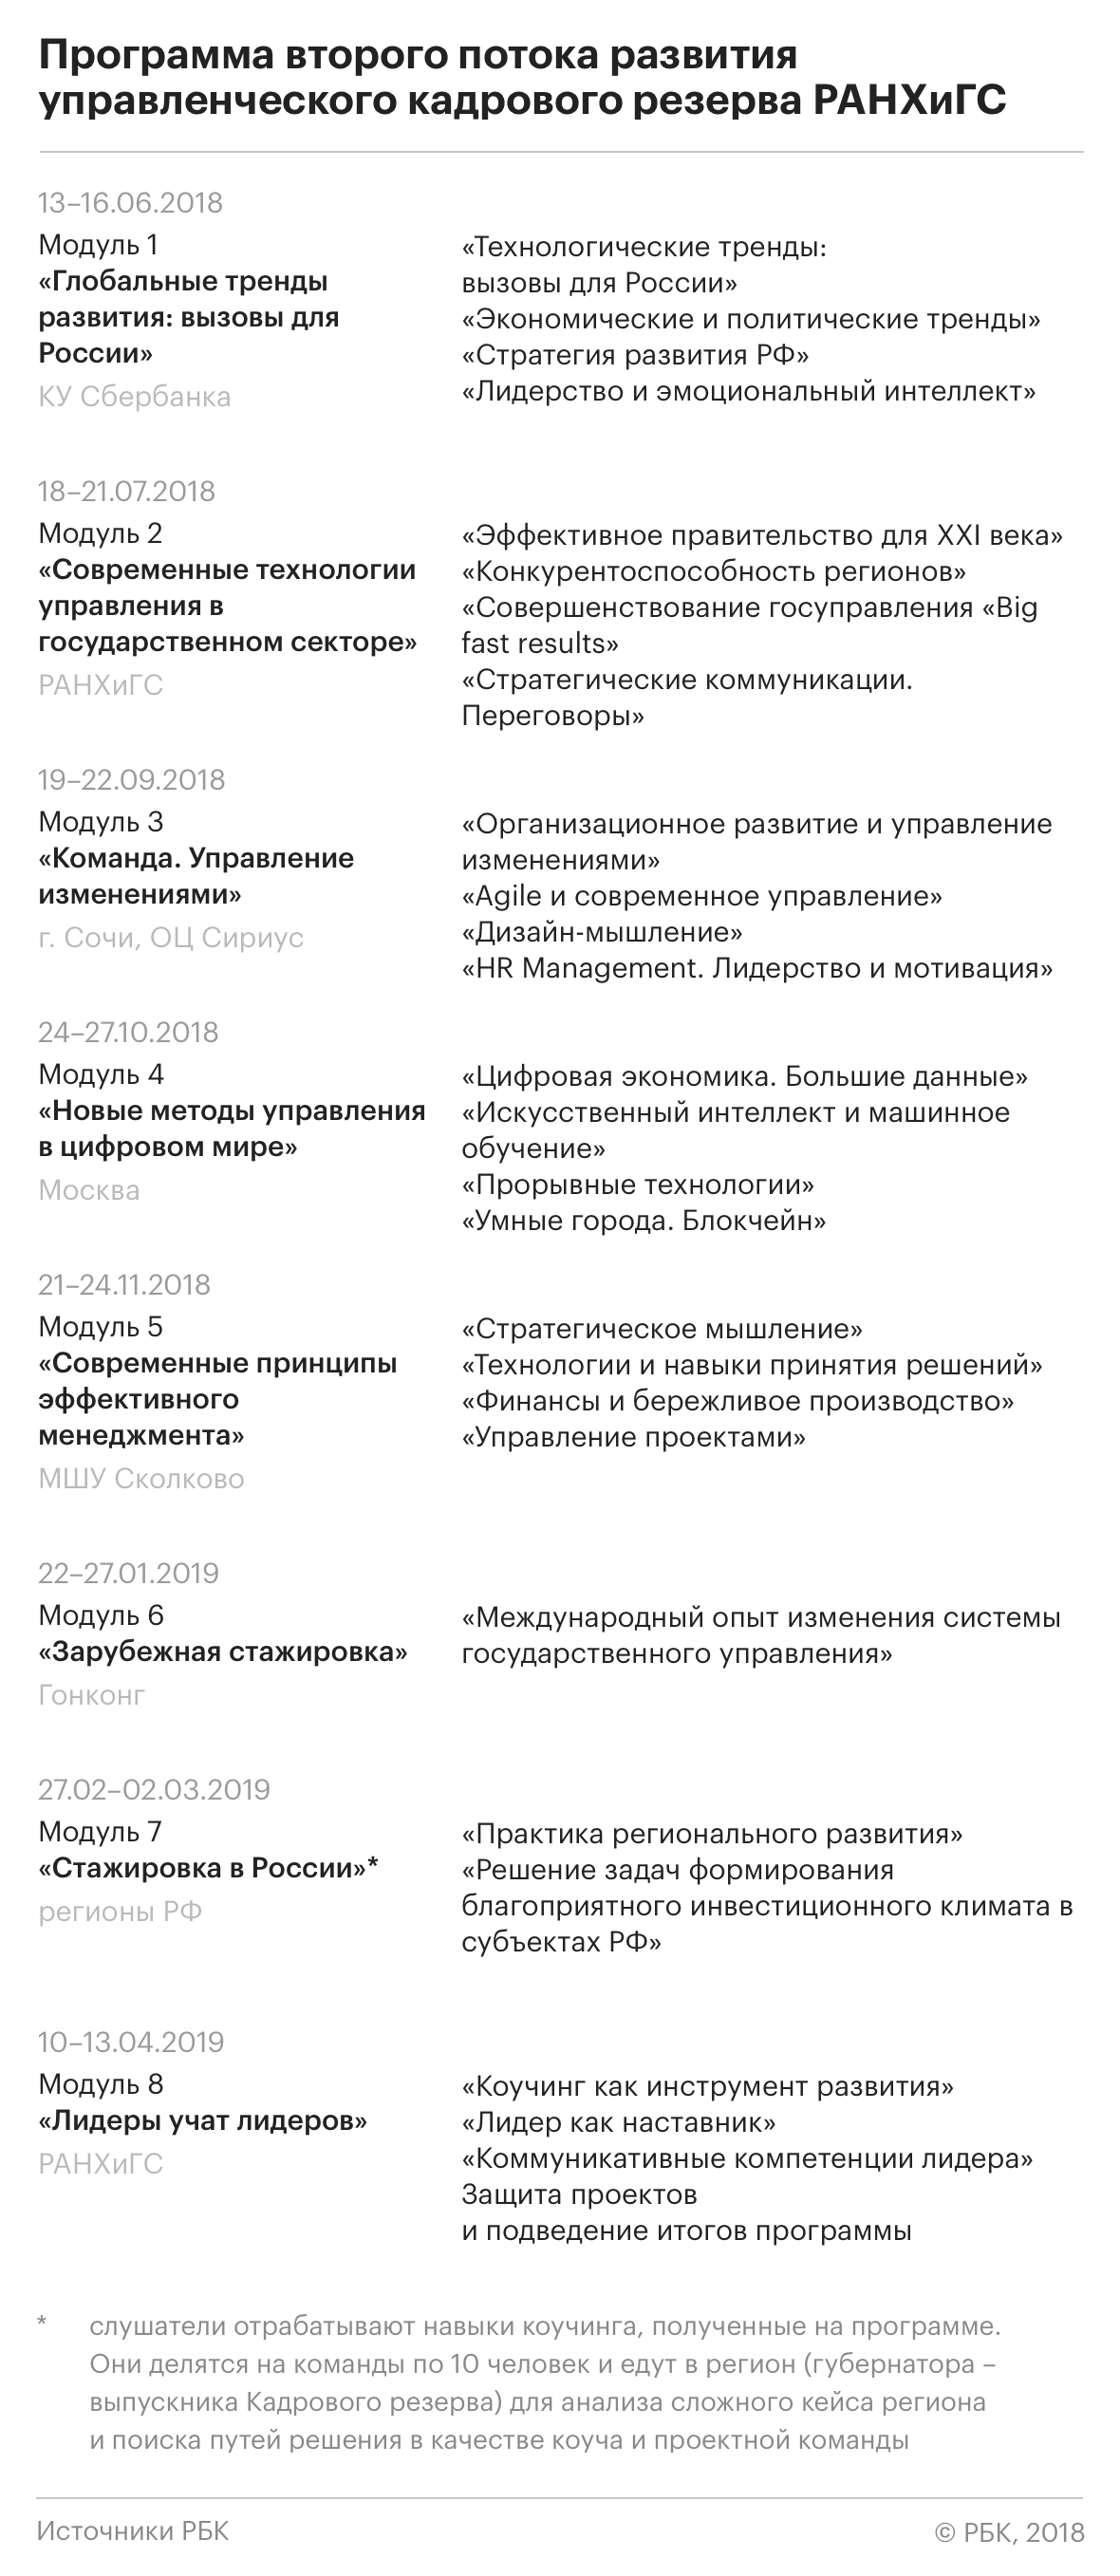 Алексей Комиссаров — РБК: «Мы никого под БТР насильно не клали»